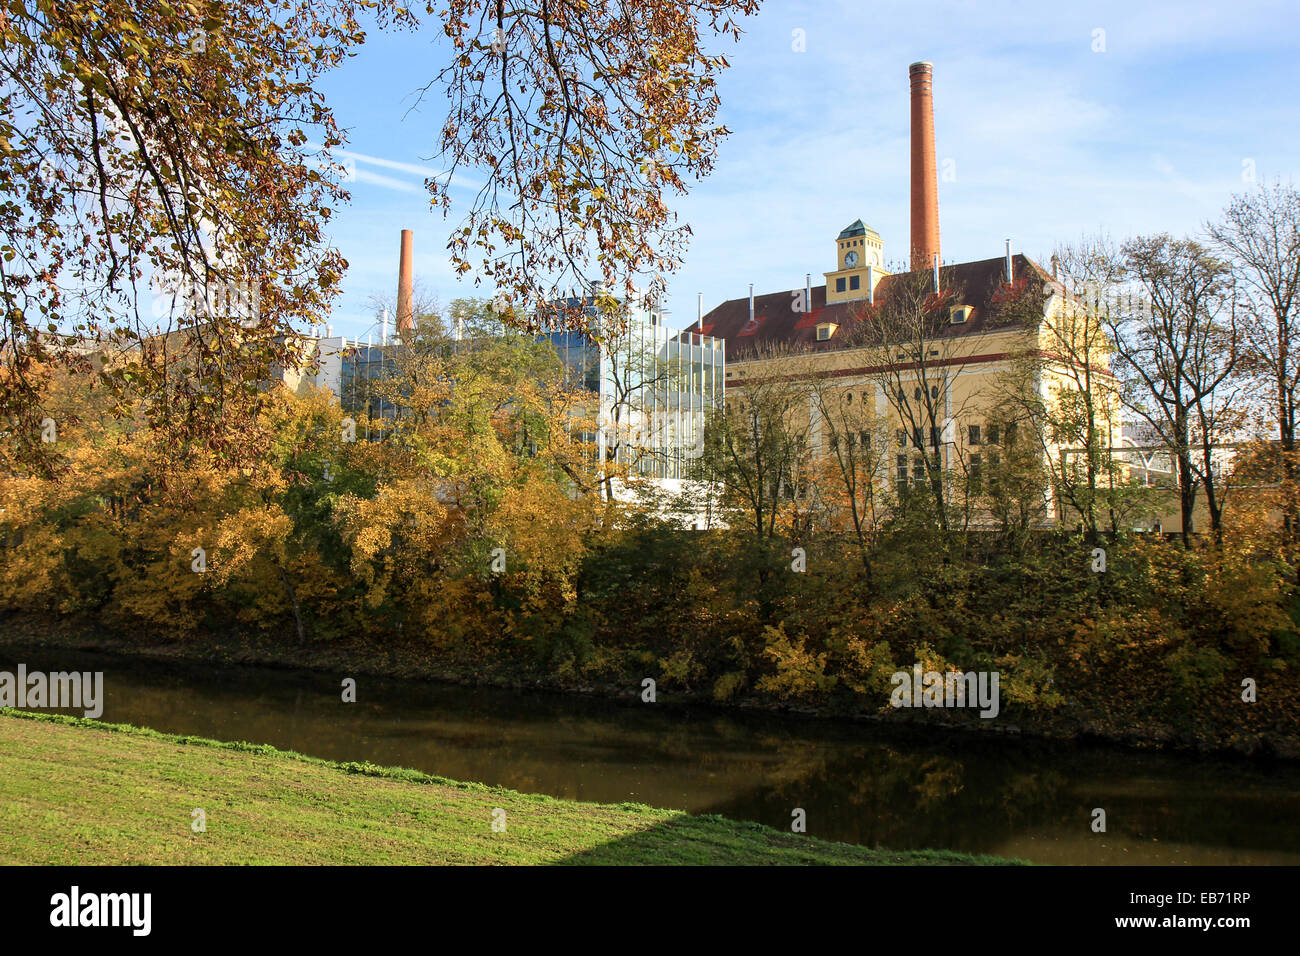 Czech Republic: Pilsner Urquell brewery, Pilsen. Photo from 8. November 2014 Stock Photo